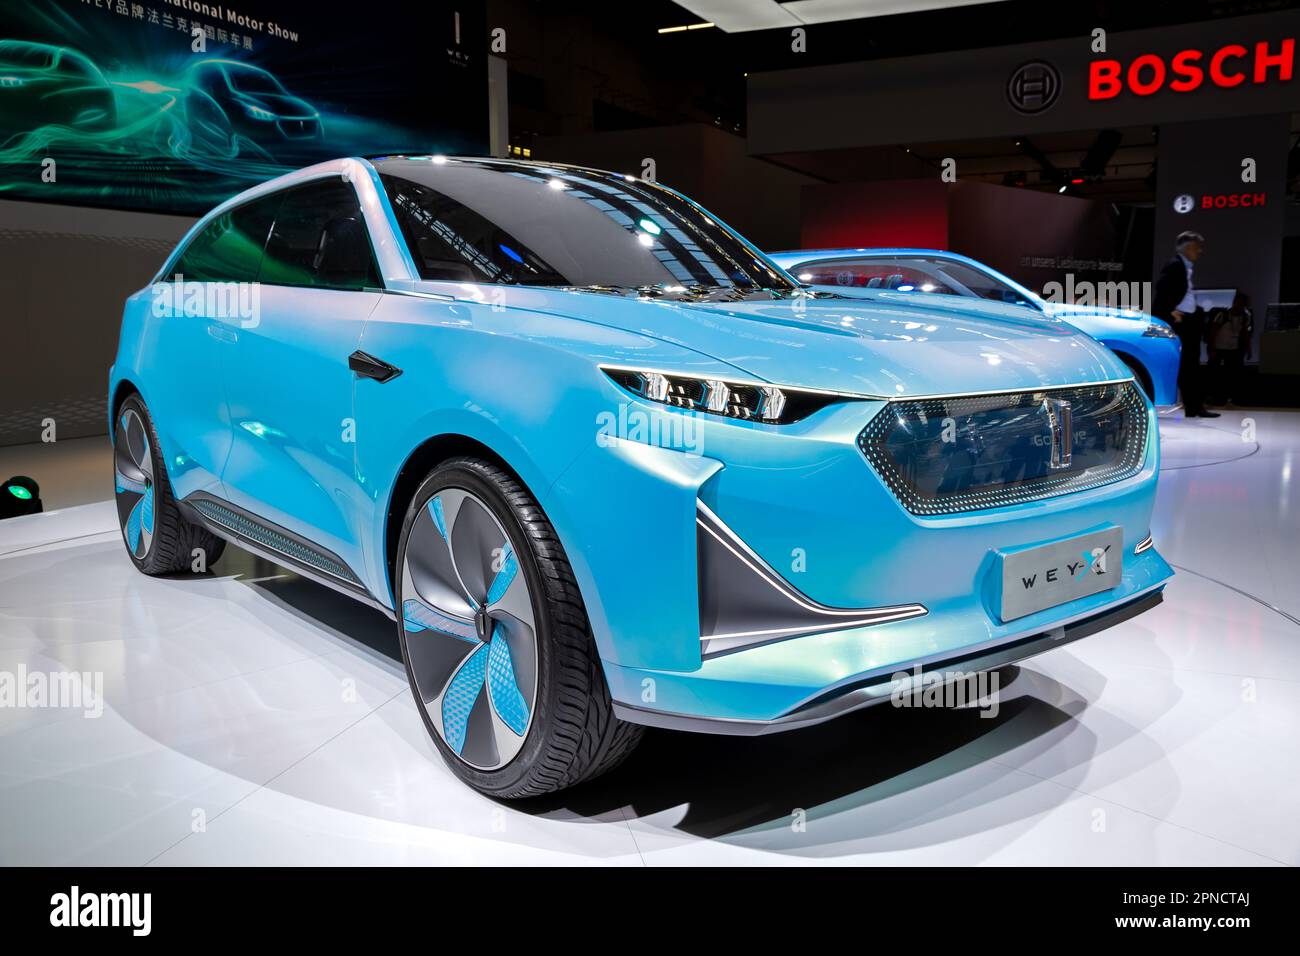 Voiture concept électrique Great Wall Motors WEY-X au salon de l'automobile IAA de Francfort. Allemagne - 10 septembre 2019. Banque D'Images